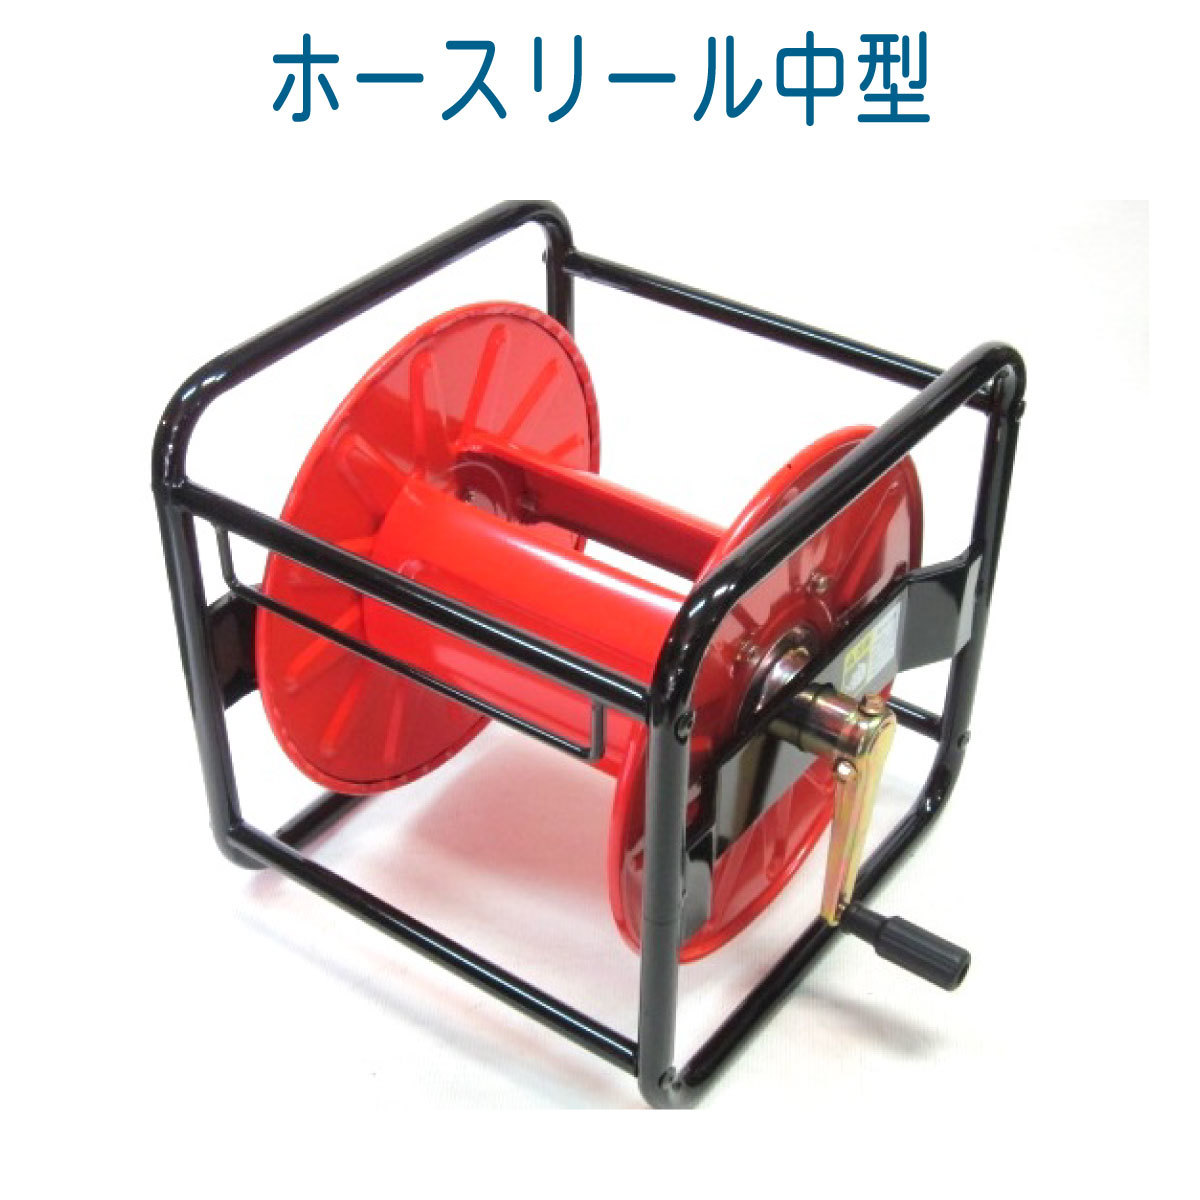 【メーカー再生品】 ホースリール本体【中型】 高圧洗浄機